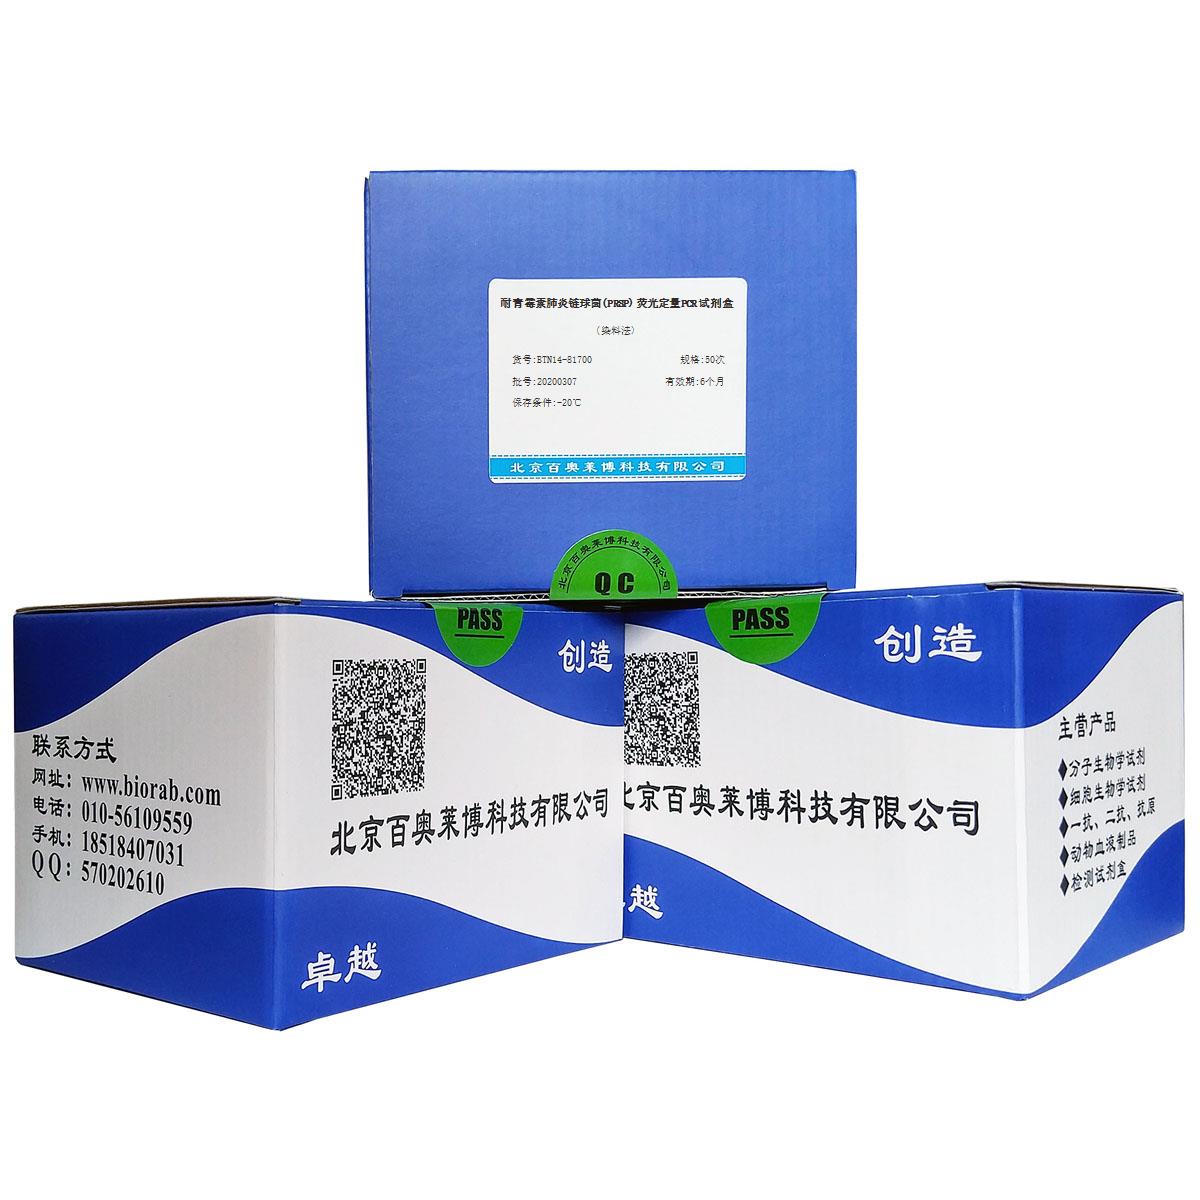 耐青霉素肺炎链球菌(PRSP)荧光定量PCR试剂盒(染料法)